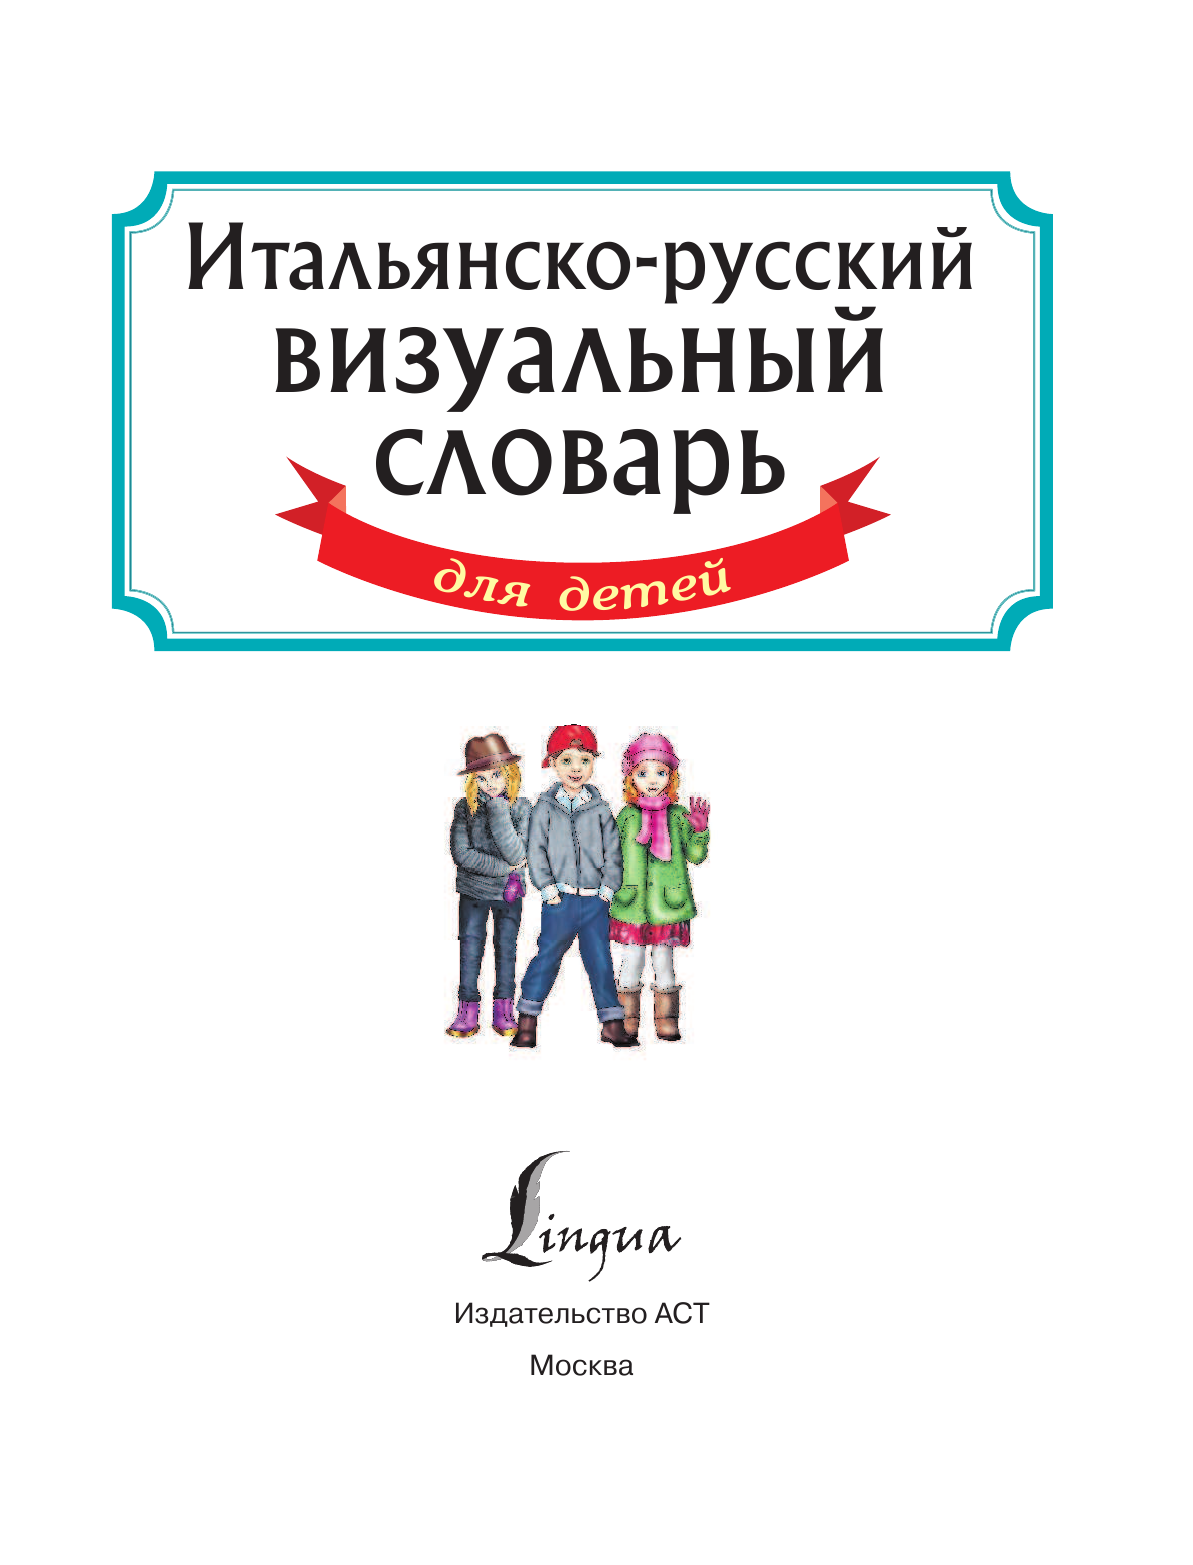  Итальянско-русский визуальный словарь для детей - страница 2